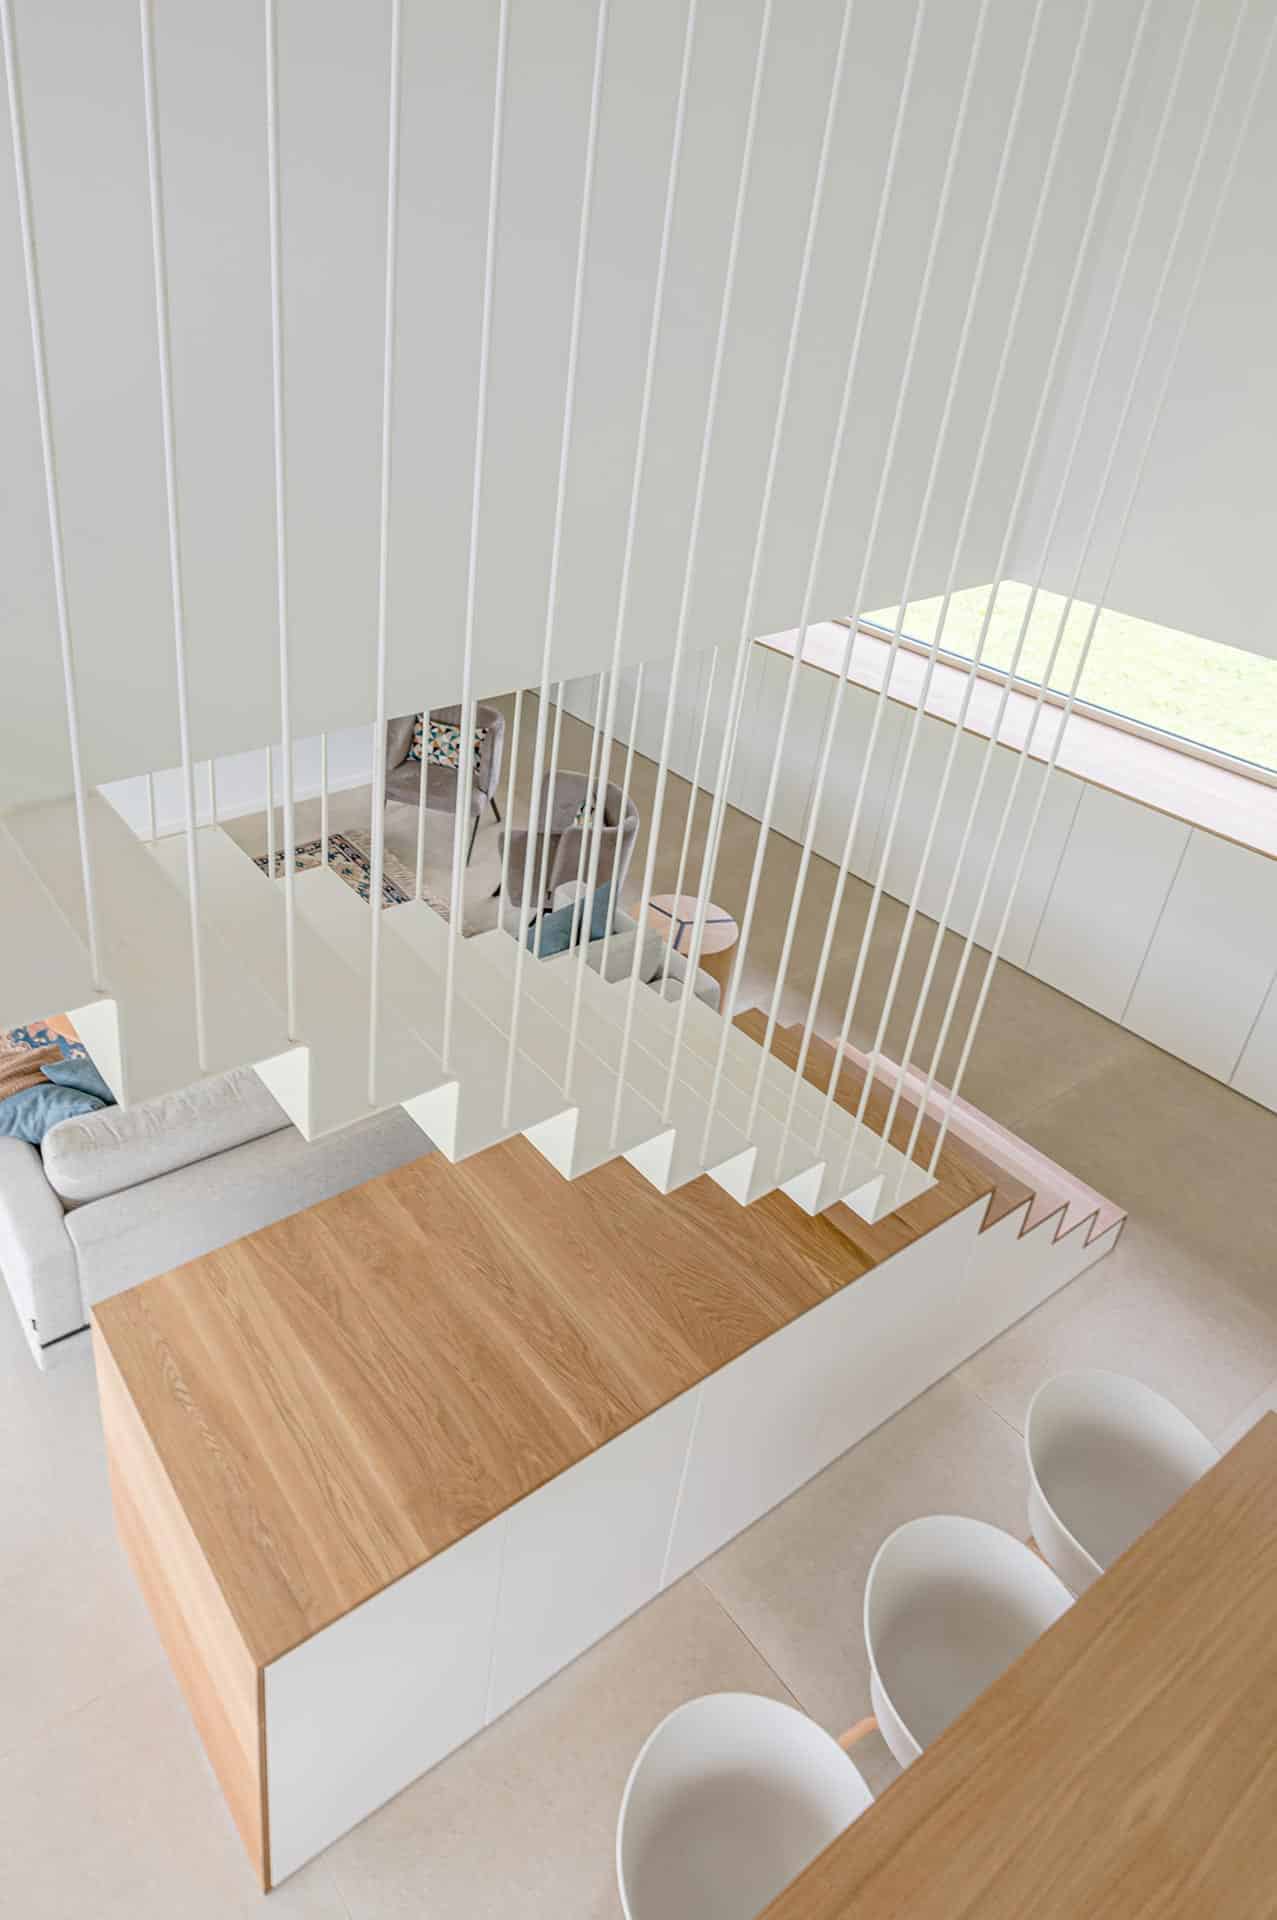 Escalera con tirantes en casa moderna pasiva diseñada por Moah Arquitectos en Pámanes